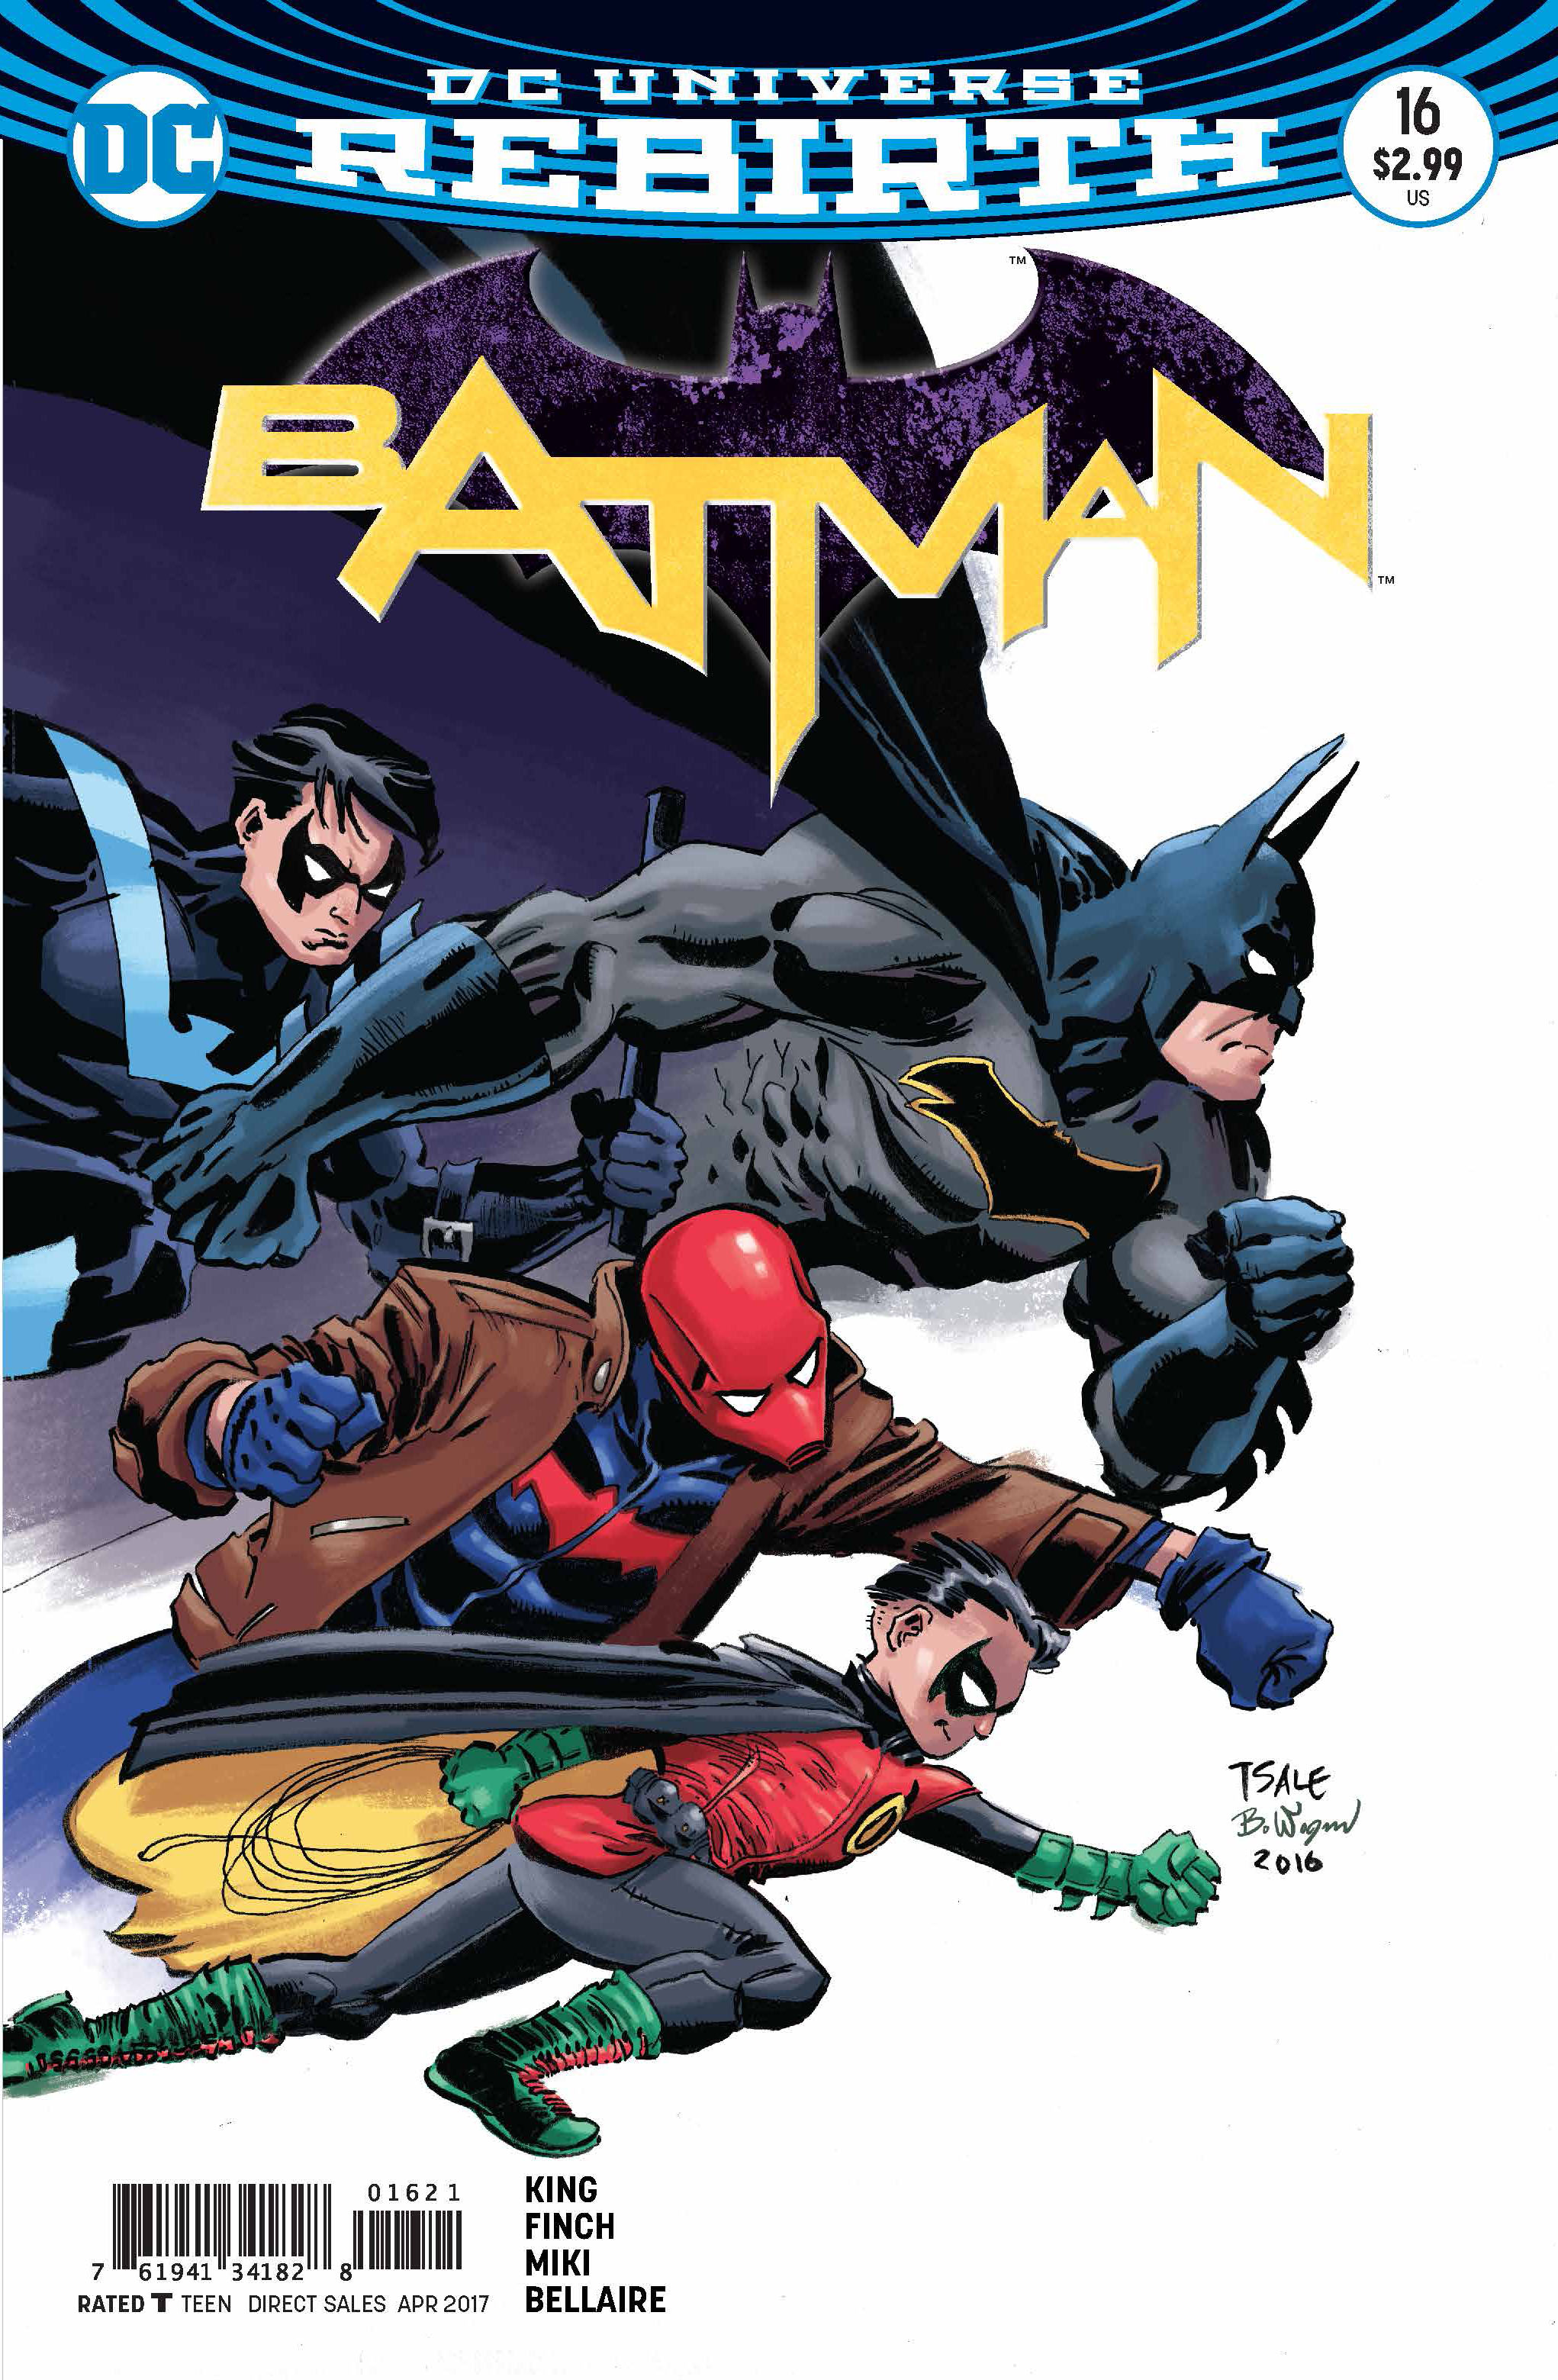 DC Preview: Batman #16